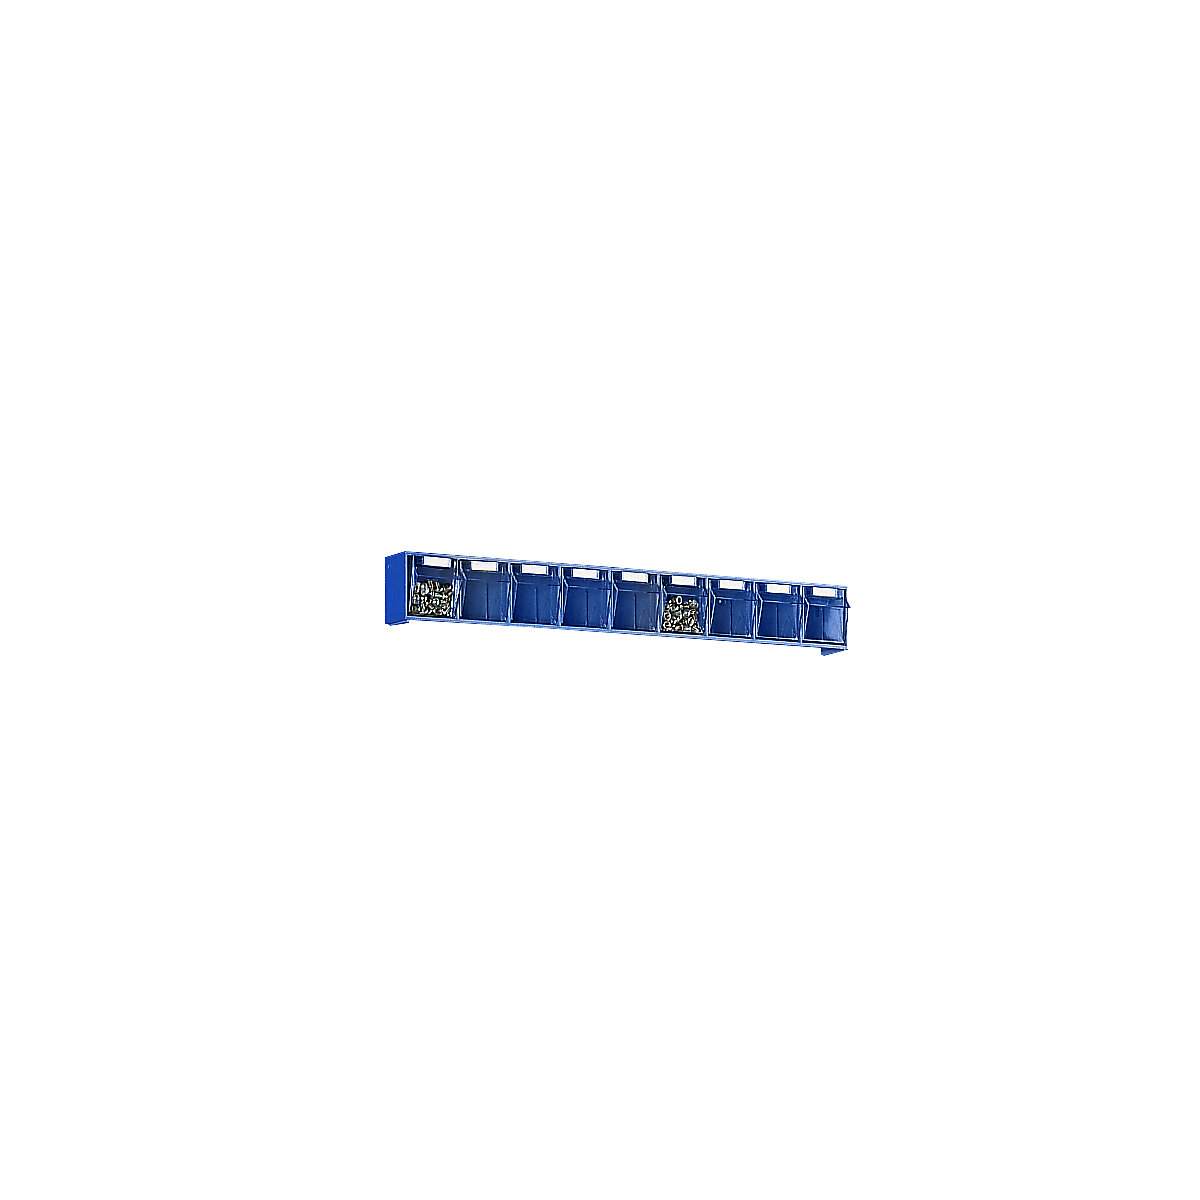 Klappkasten-System, Gehäuse-HxBxT 77 x 600 x 62 mm, 9 Kästen, blau-7